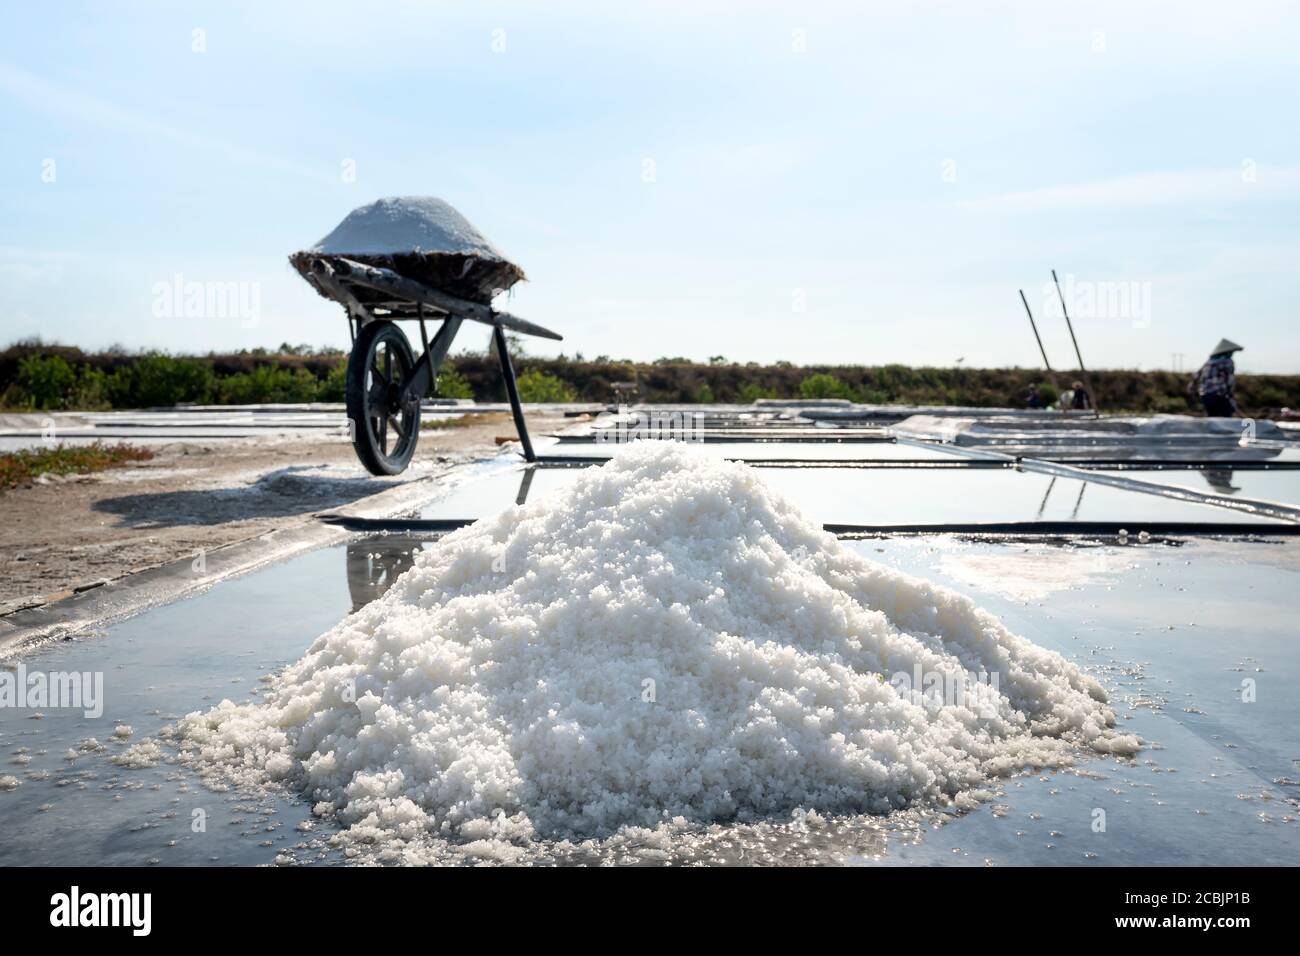 L'image d'une brouette en bois pour le transport du sel des producteurs de sel dans la province de Nghe an, au Vietnam Banque D'Images